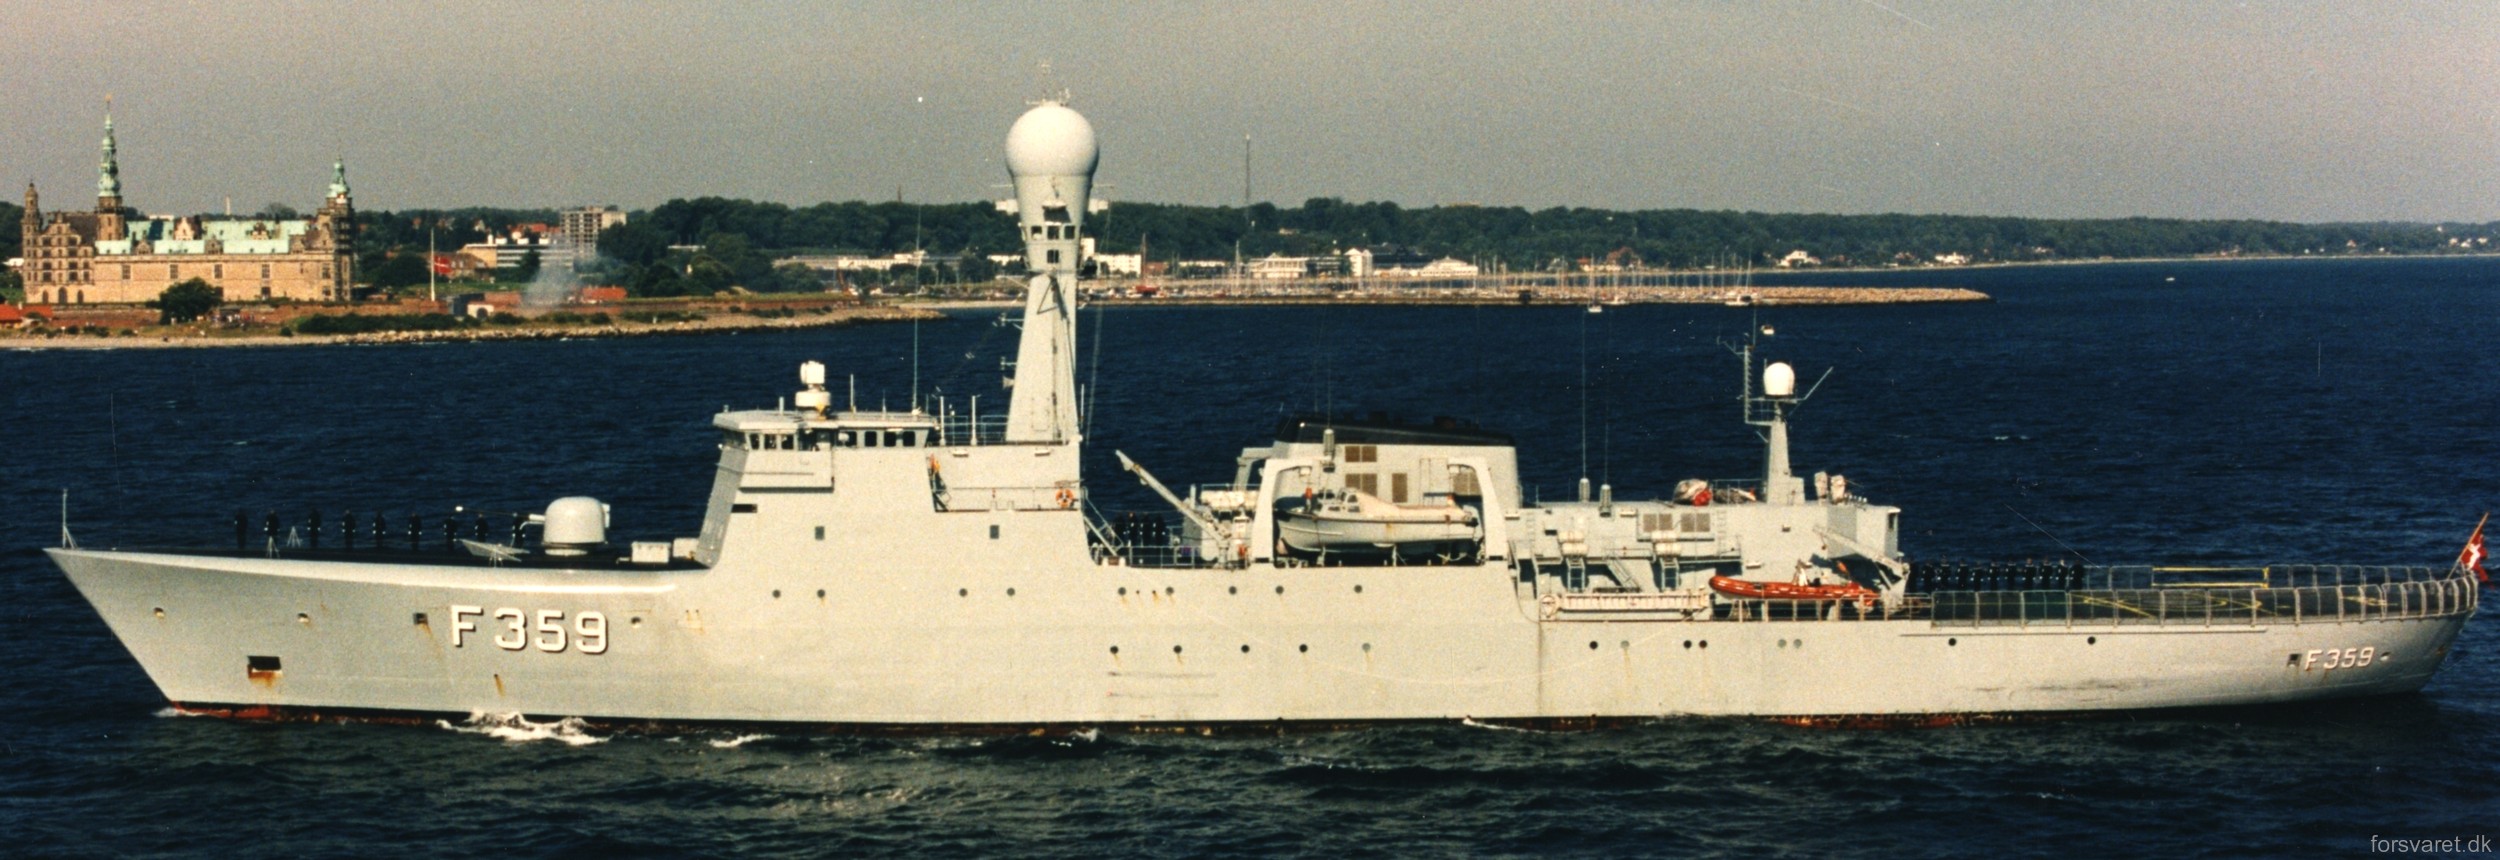 f-359 hdms vaedderen thetis class ocean patrol frigate royal danish navy kongelige danske marine kdm inspektionsskibet 18